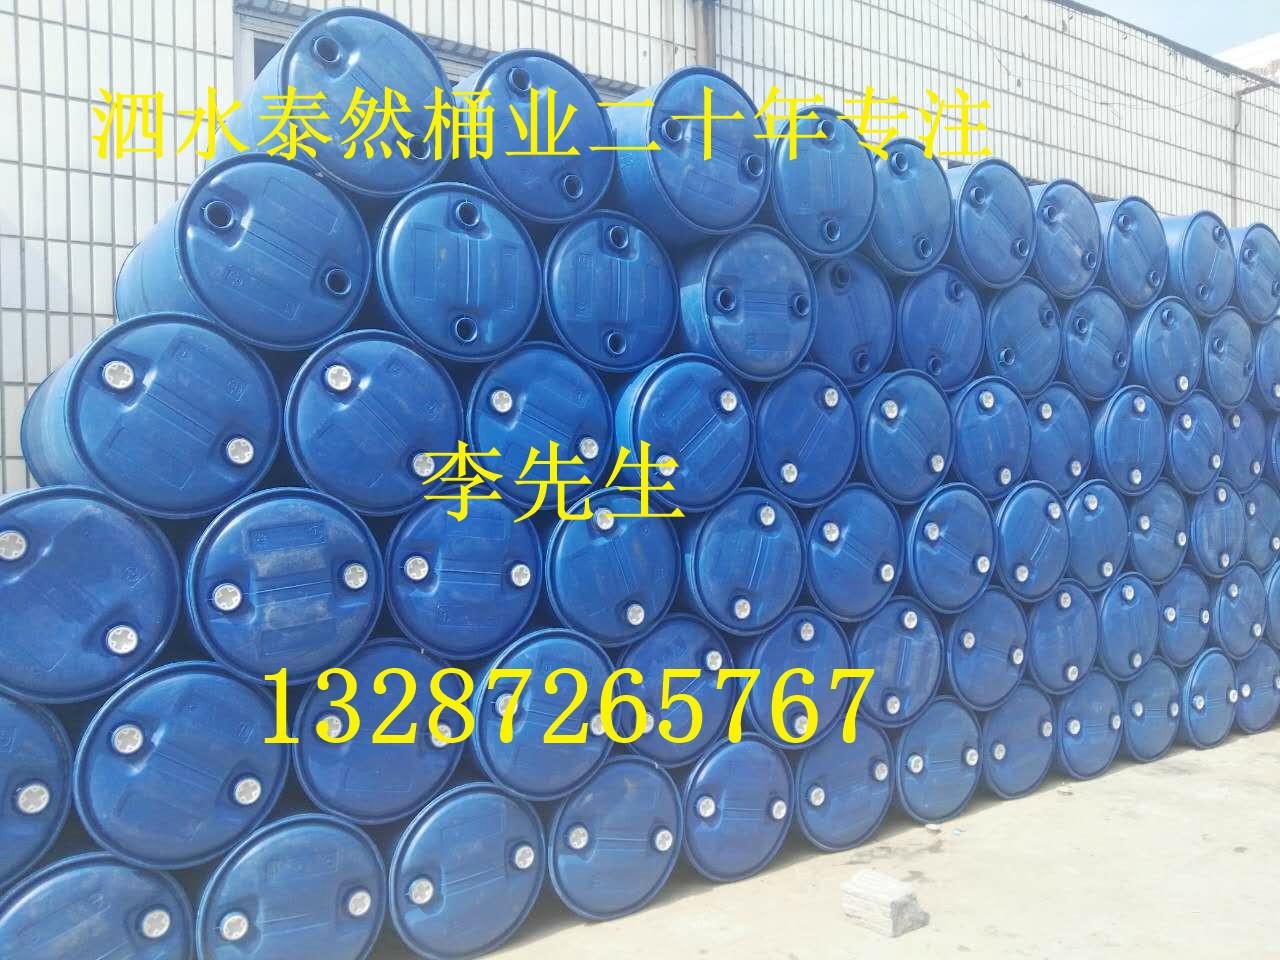 200L塑料桶|出口級塑料桶|塑料桶包裝桶皮重8-10.5kg|純料生產 3